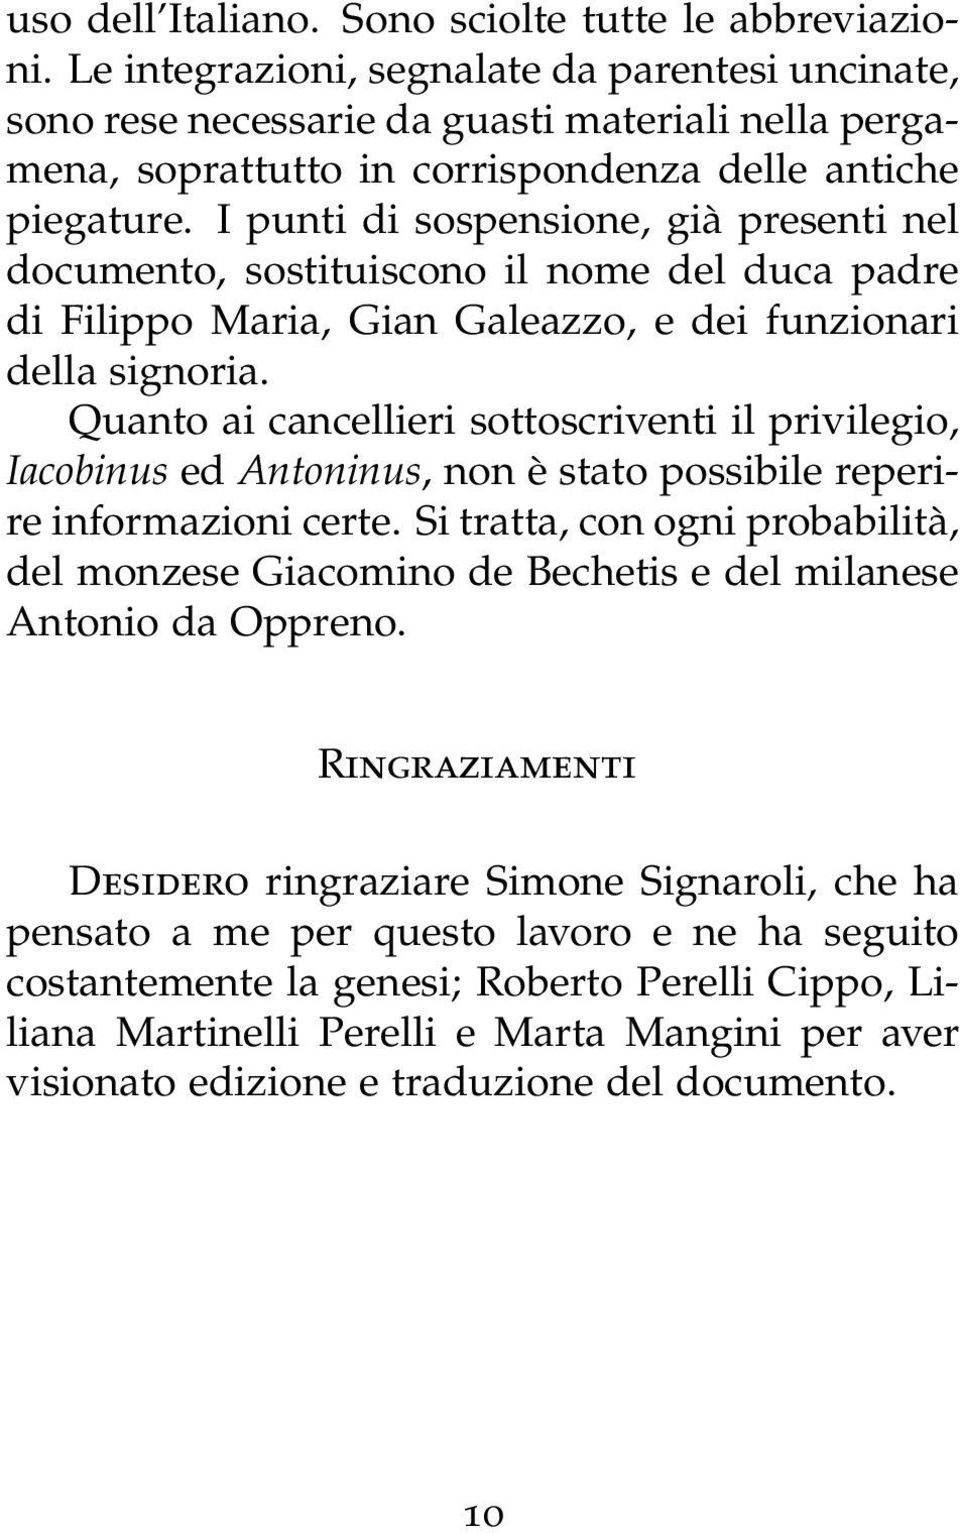 I punti di sospensione, già presenti nel documento, sostituiscono il nome del duca padre di Filippo Maria, Gian Galeazzo, e dei funzionari della signoria.